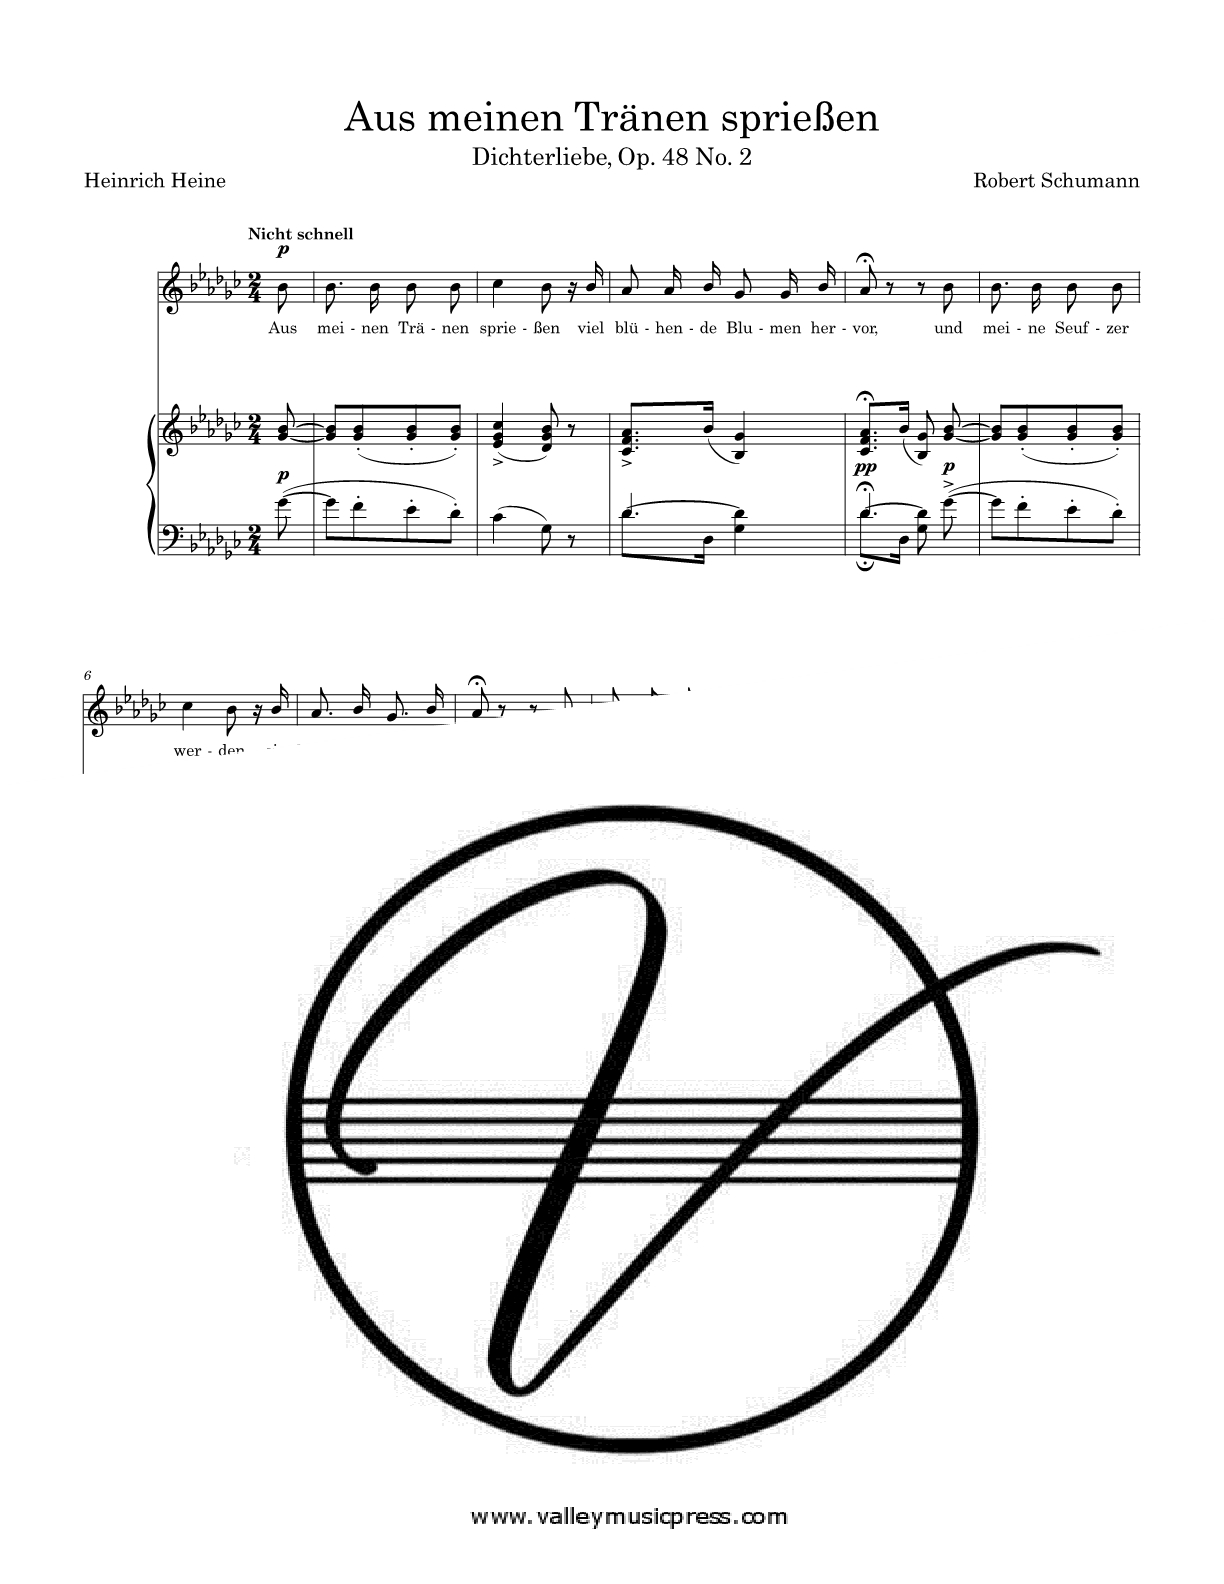 Schumann - Aus meinen Thranen spriessen Op. 48 No. 2 (Voice)